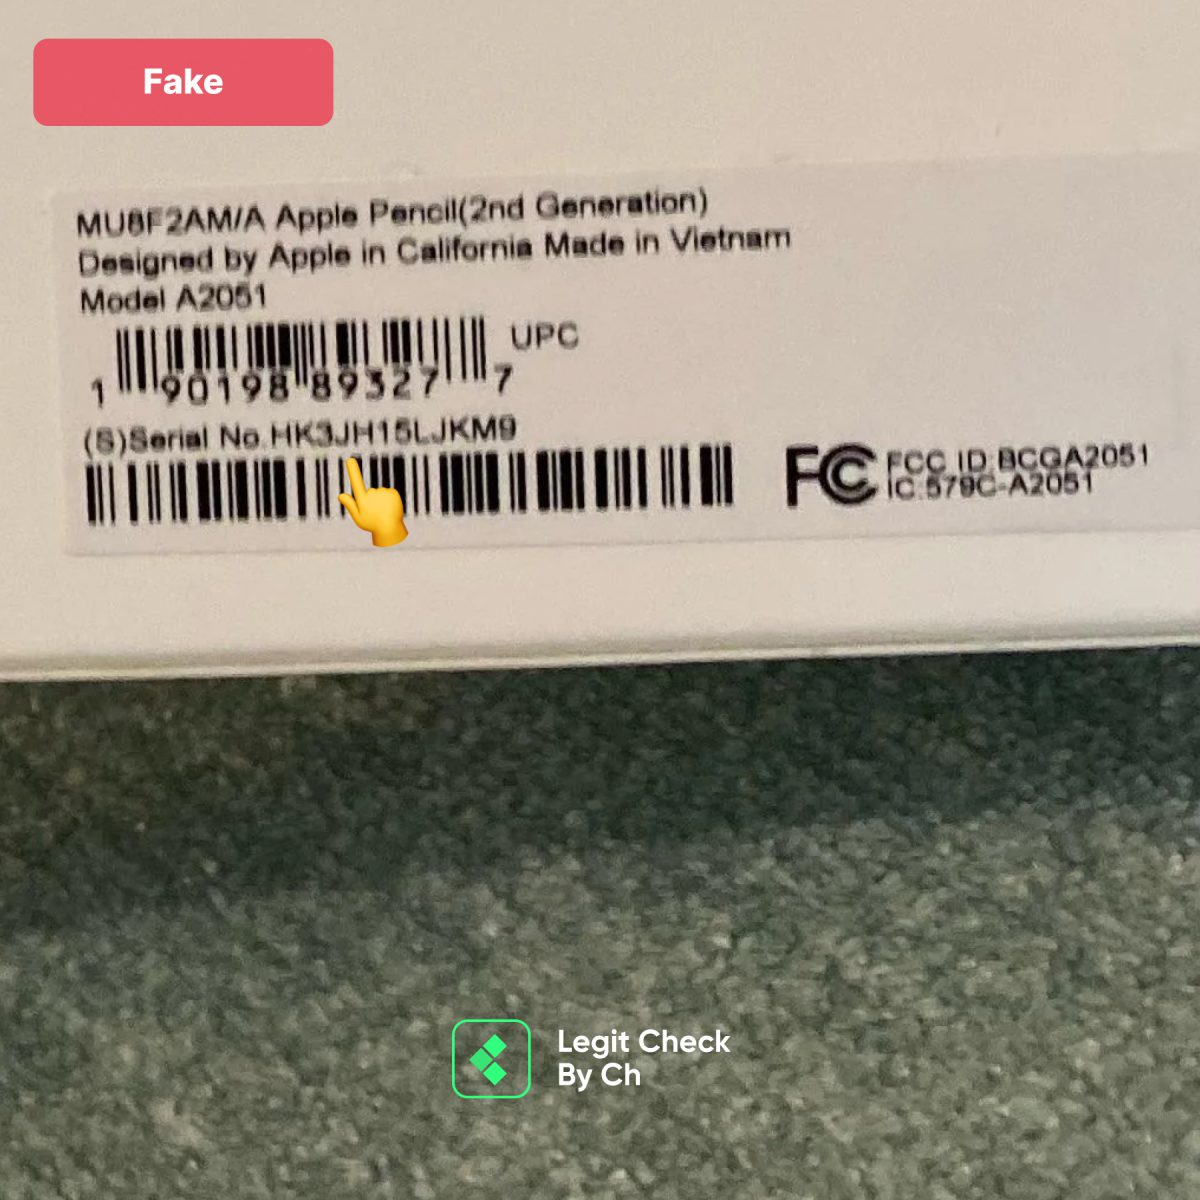 Fake Apple Pencil Serial Number